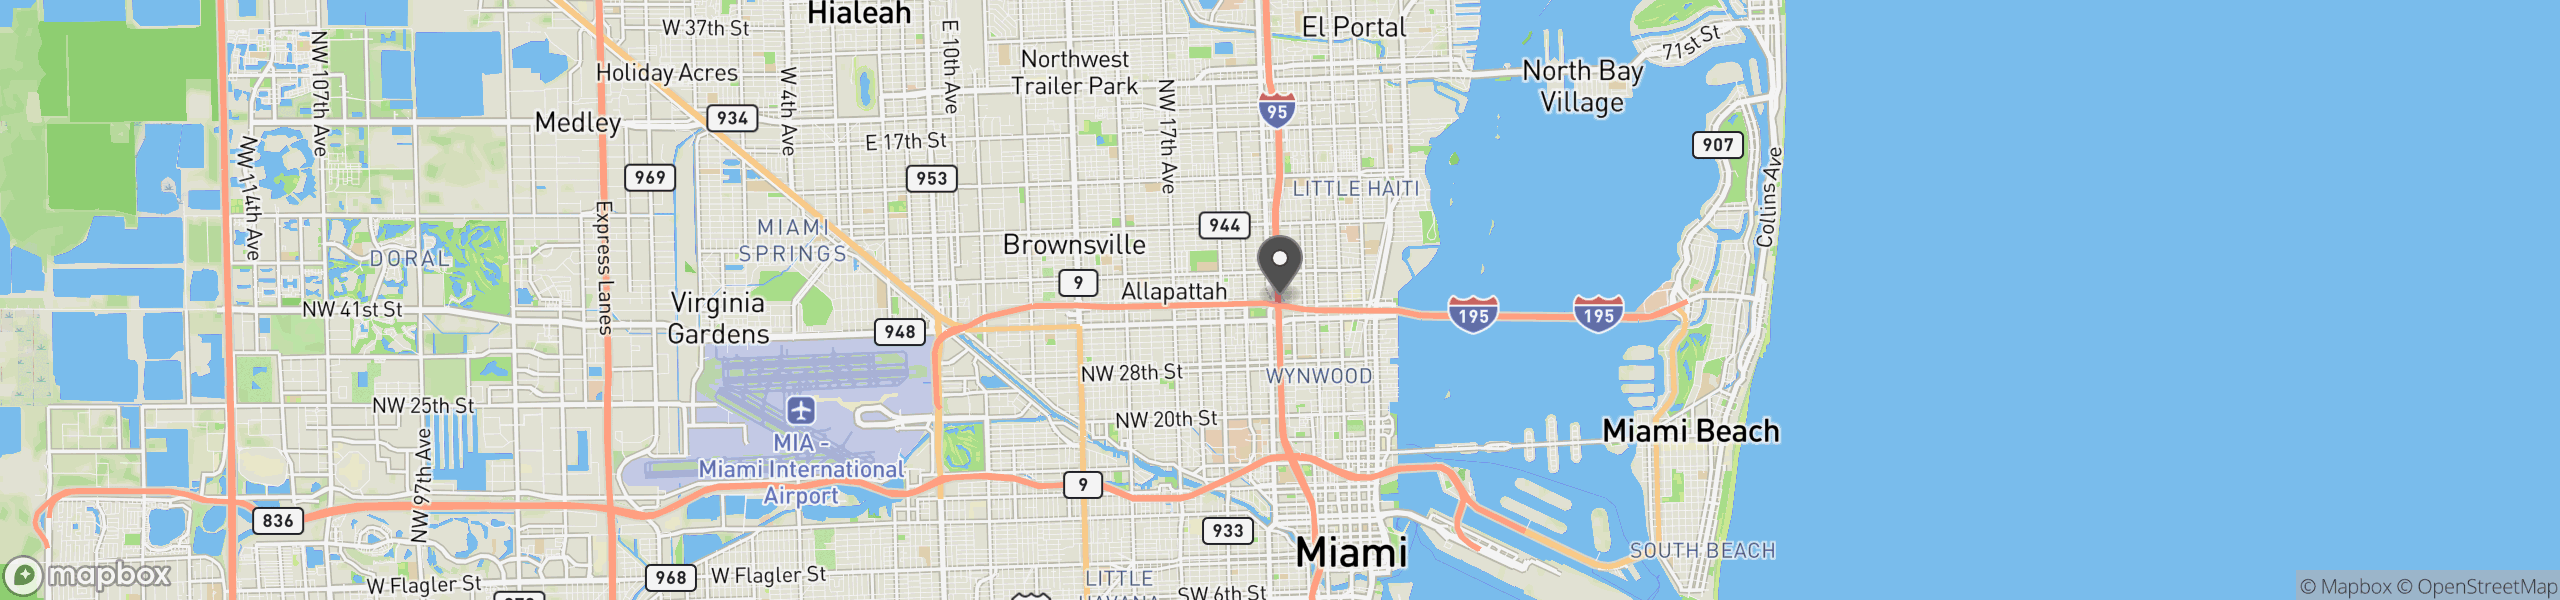 Miami, FL 33127